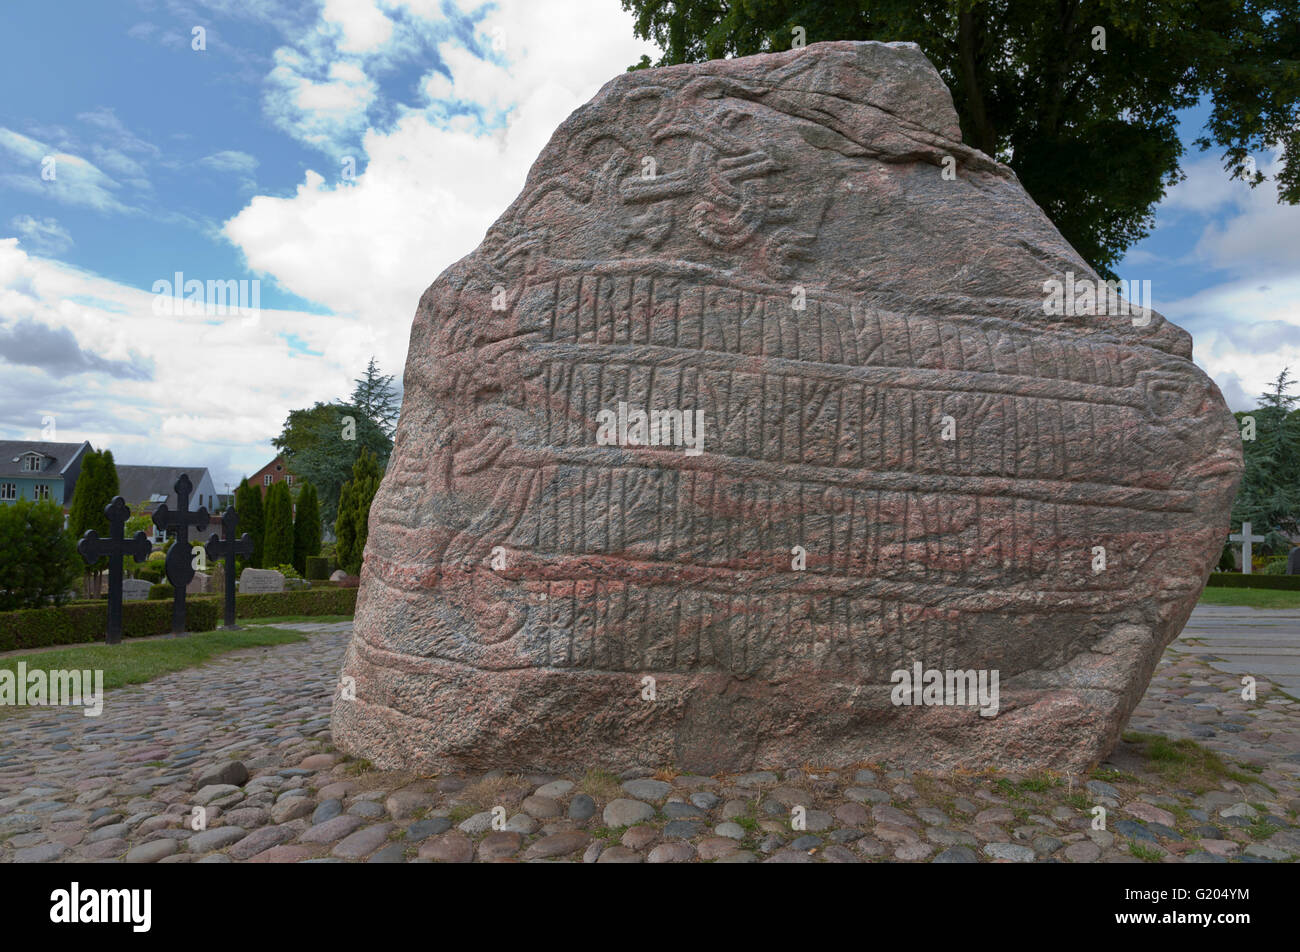 Runeninschrift auf dem großen Jelling Runenstein aus dem 10. Jahrhundert, der von König Harald Bluetooth in Jelling erhoben wurde. Jesus Figur auf der anderen Seite Stockfoto